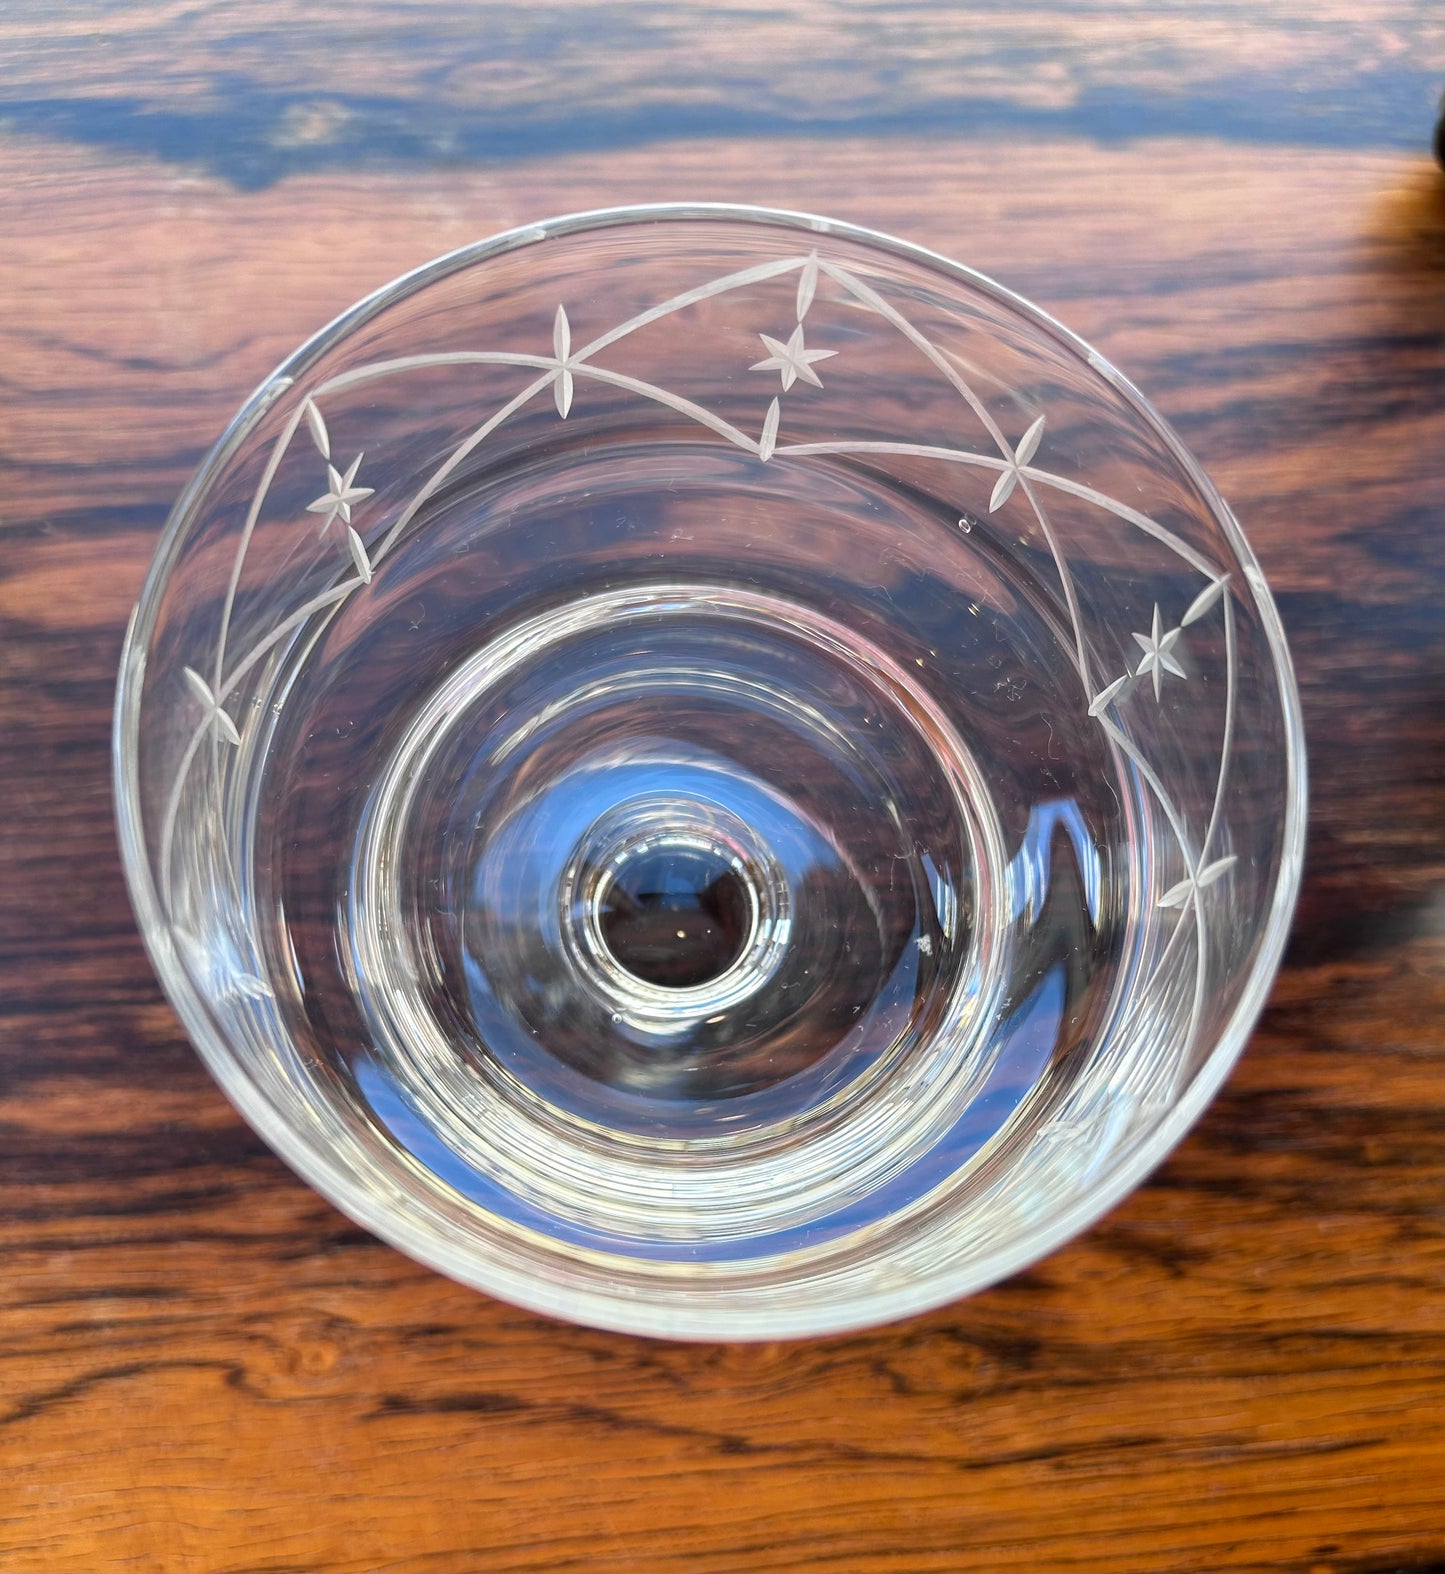 Kosta - Cocktailglas - Kristallglas